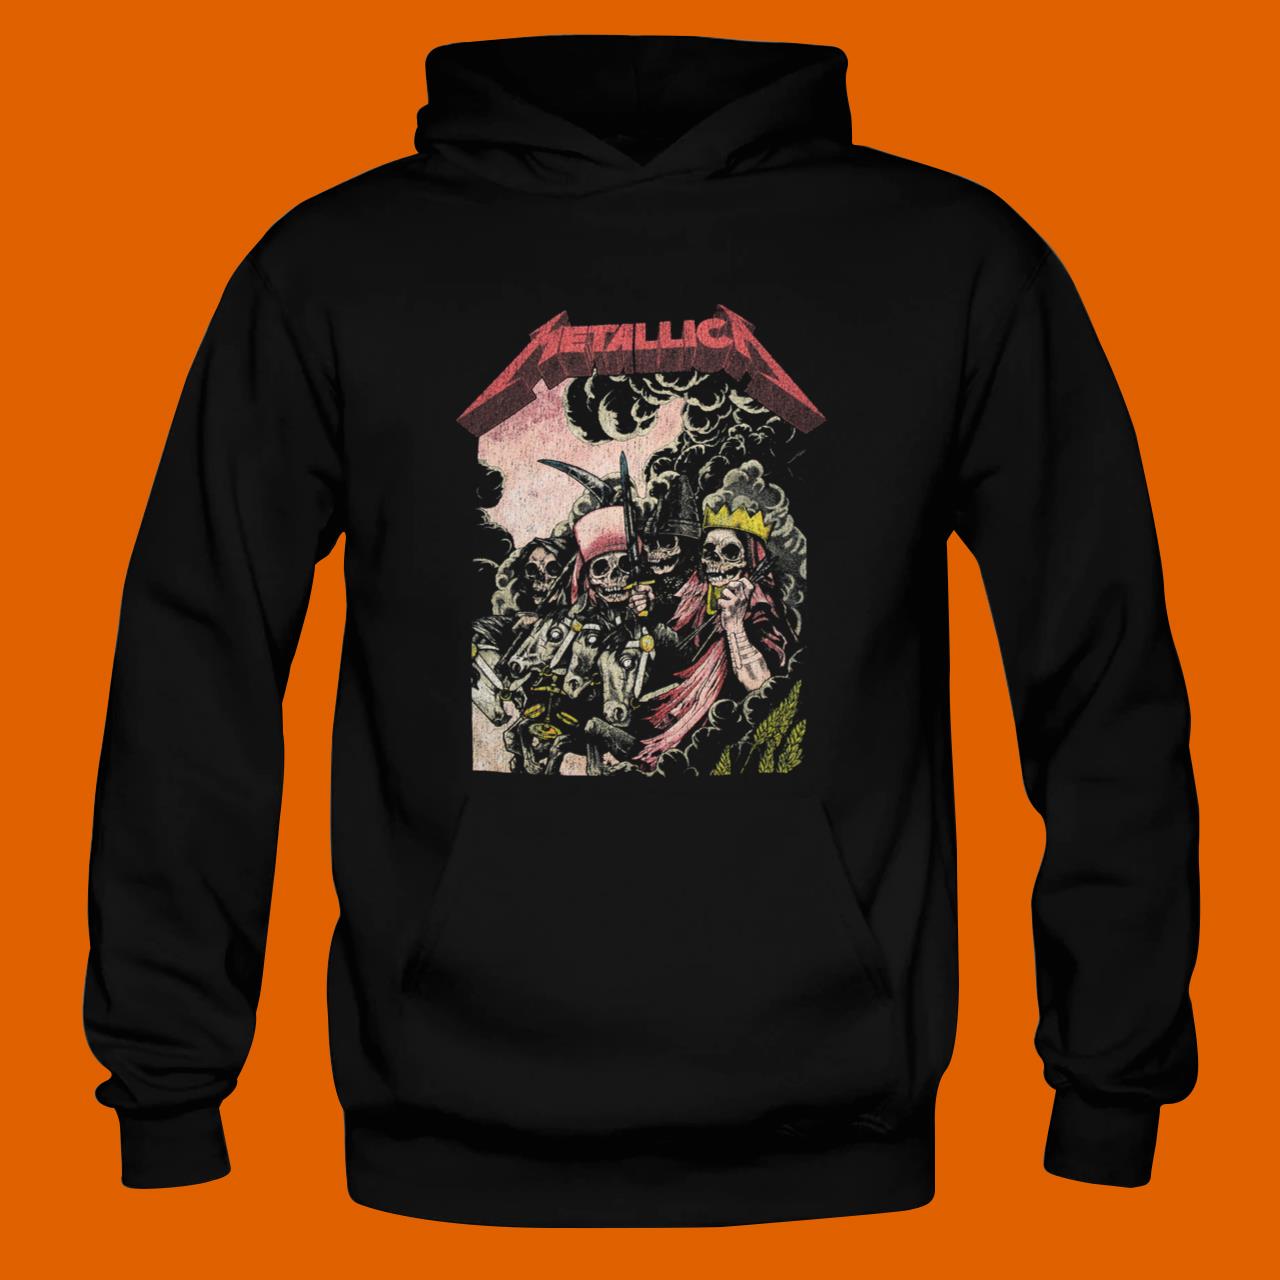 Metallica The Four Horsemen T-shirt